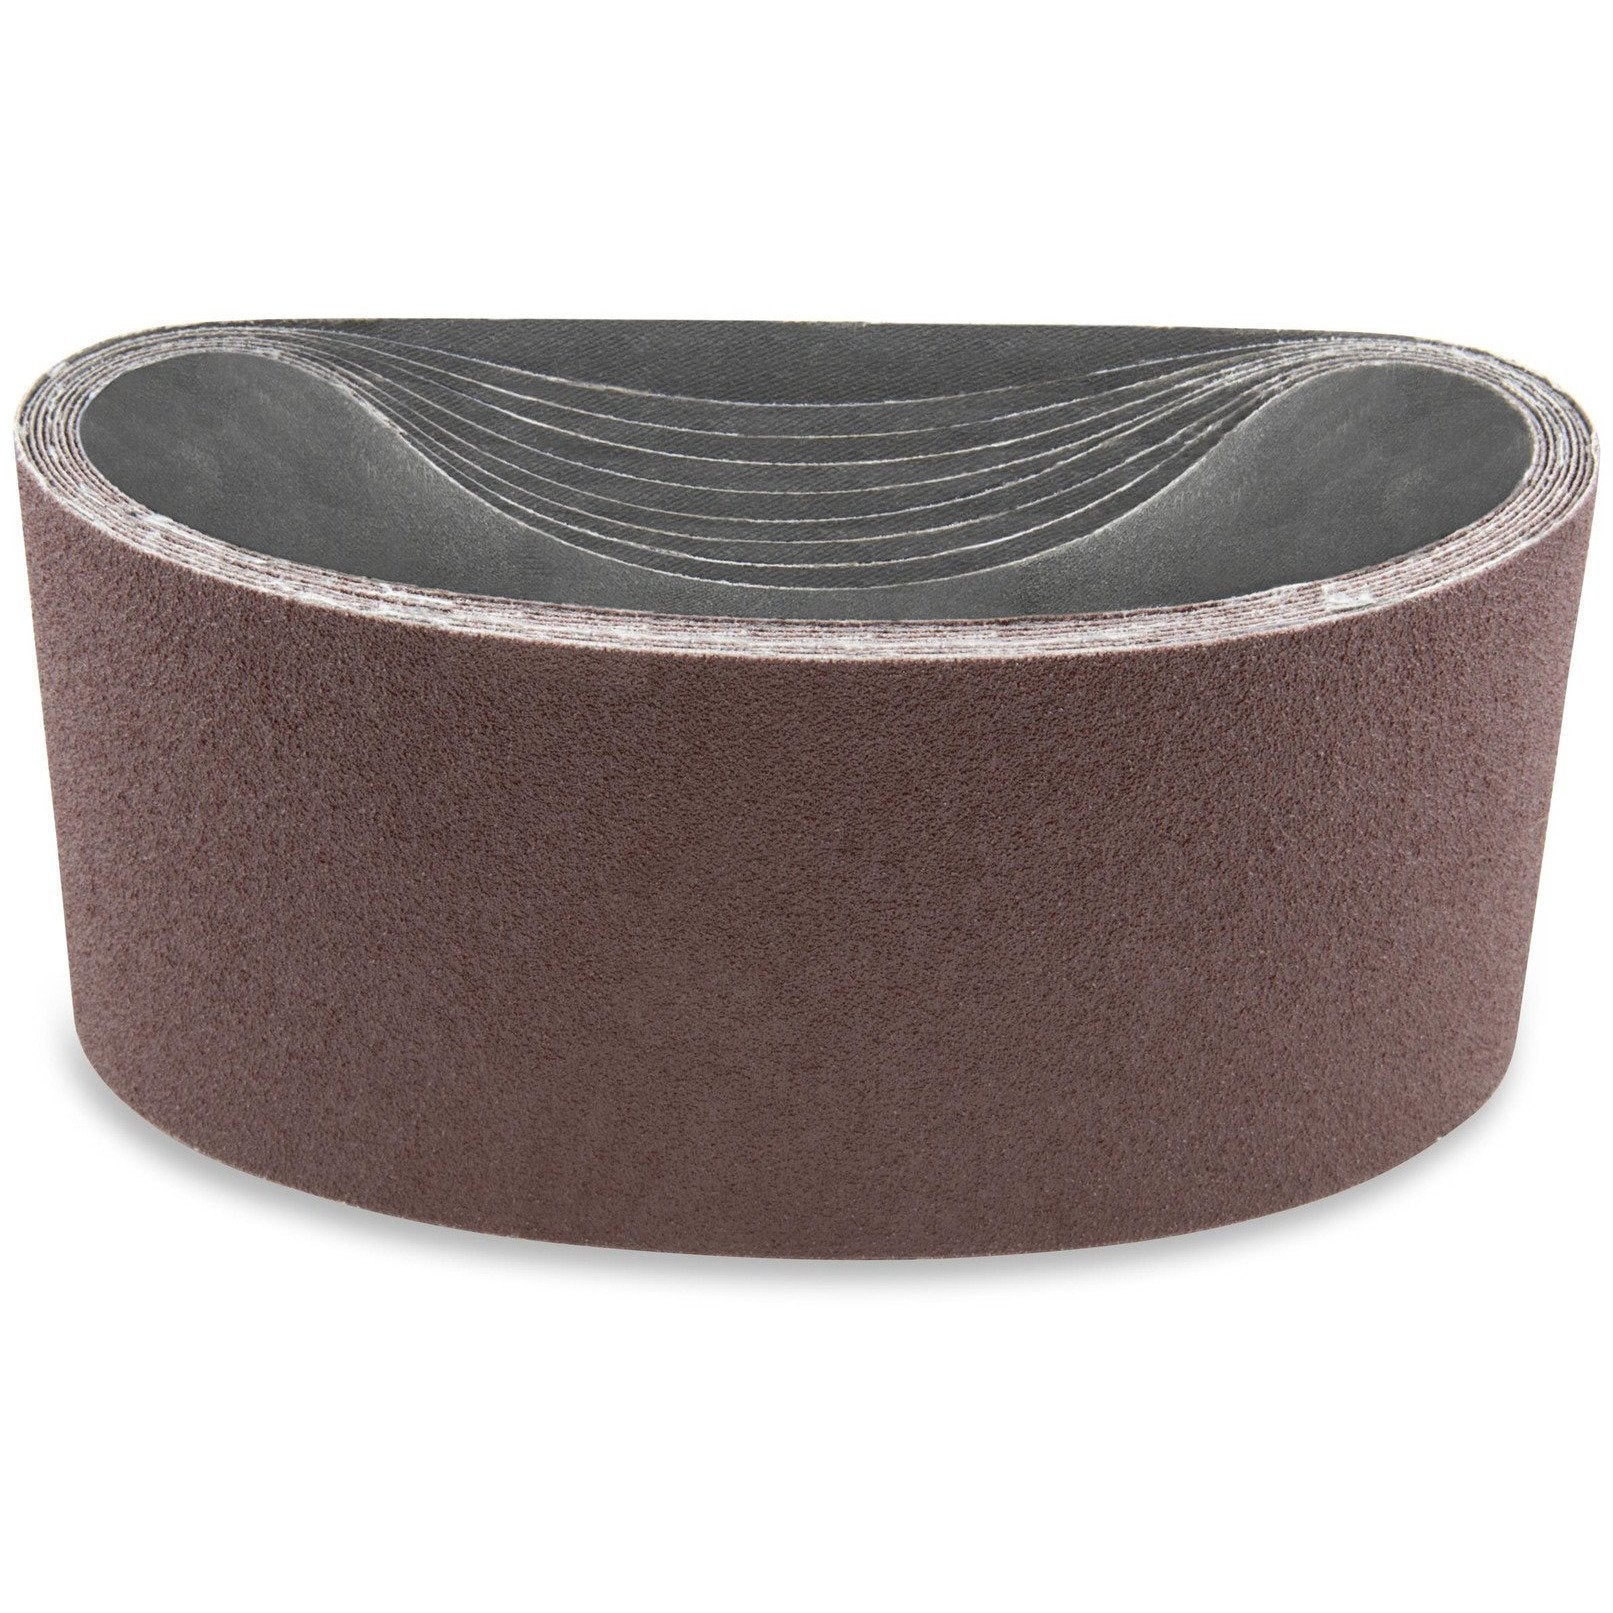 4 X 132 Inch Aluminum Oxide Sanding Belts, 3 Pack - Red Label Abrasives